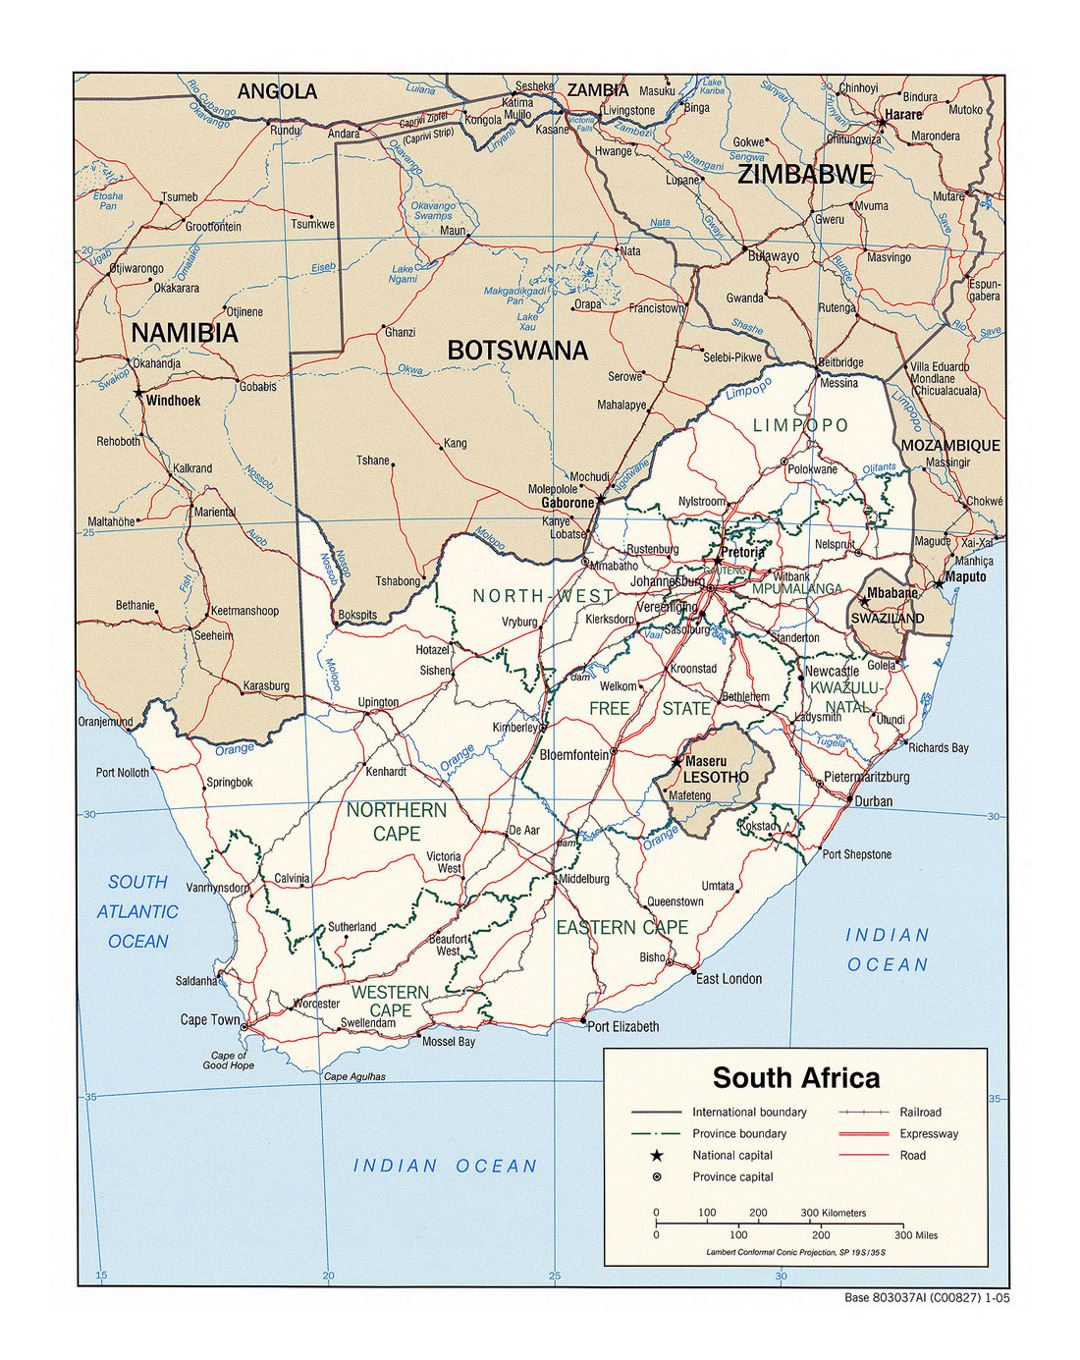 Детальная политическая и административная карта Южной Африки с дорогами, железными дорогами и крупными городами - 2005